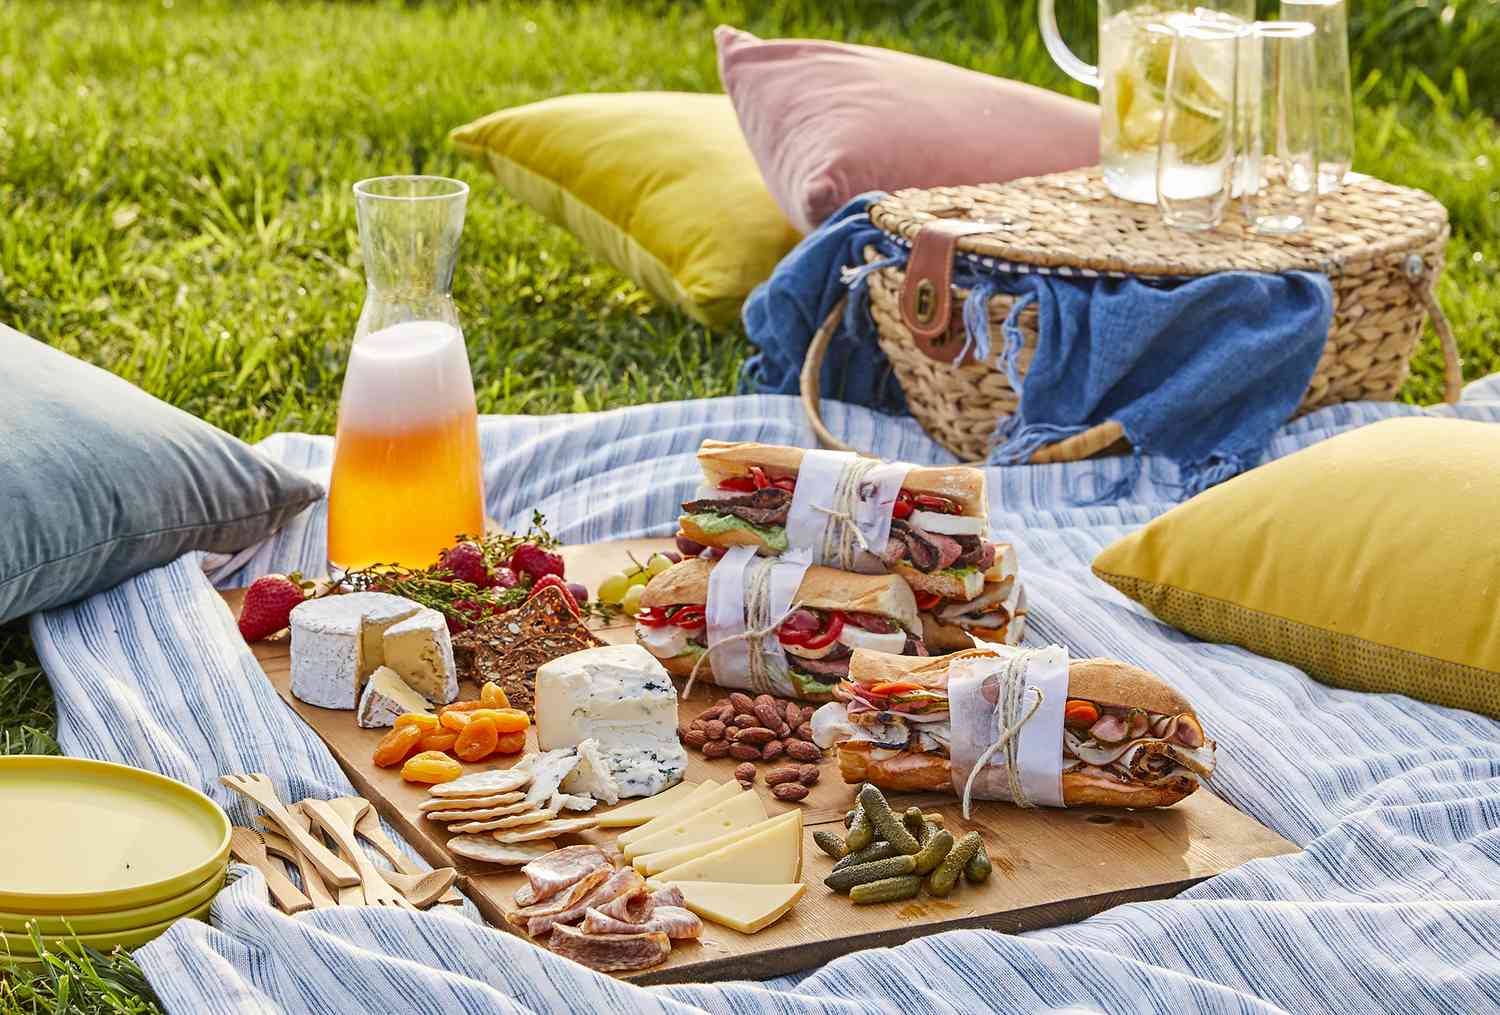 Best picnic spots in Seattle 2023